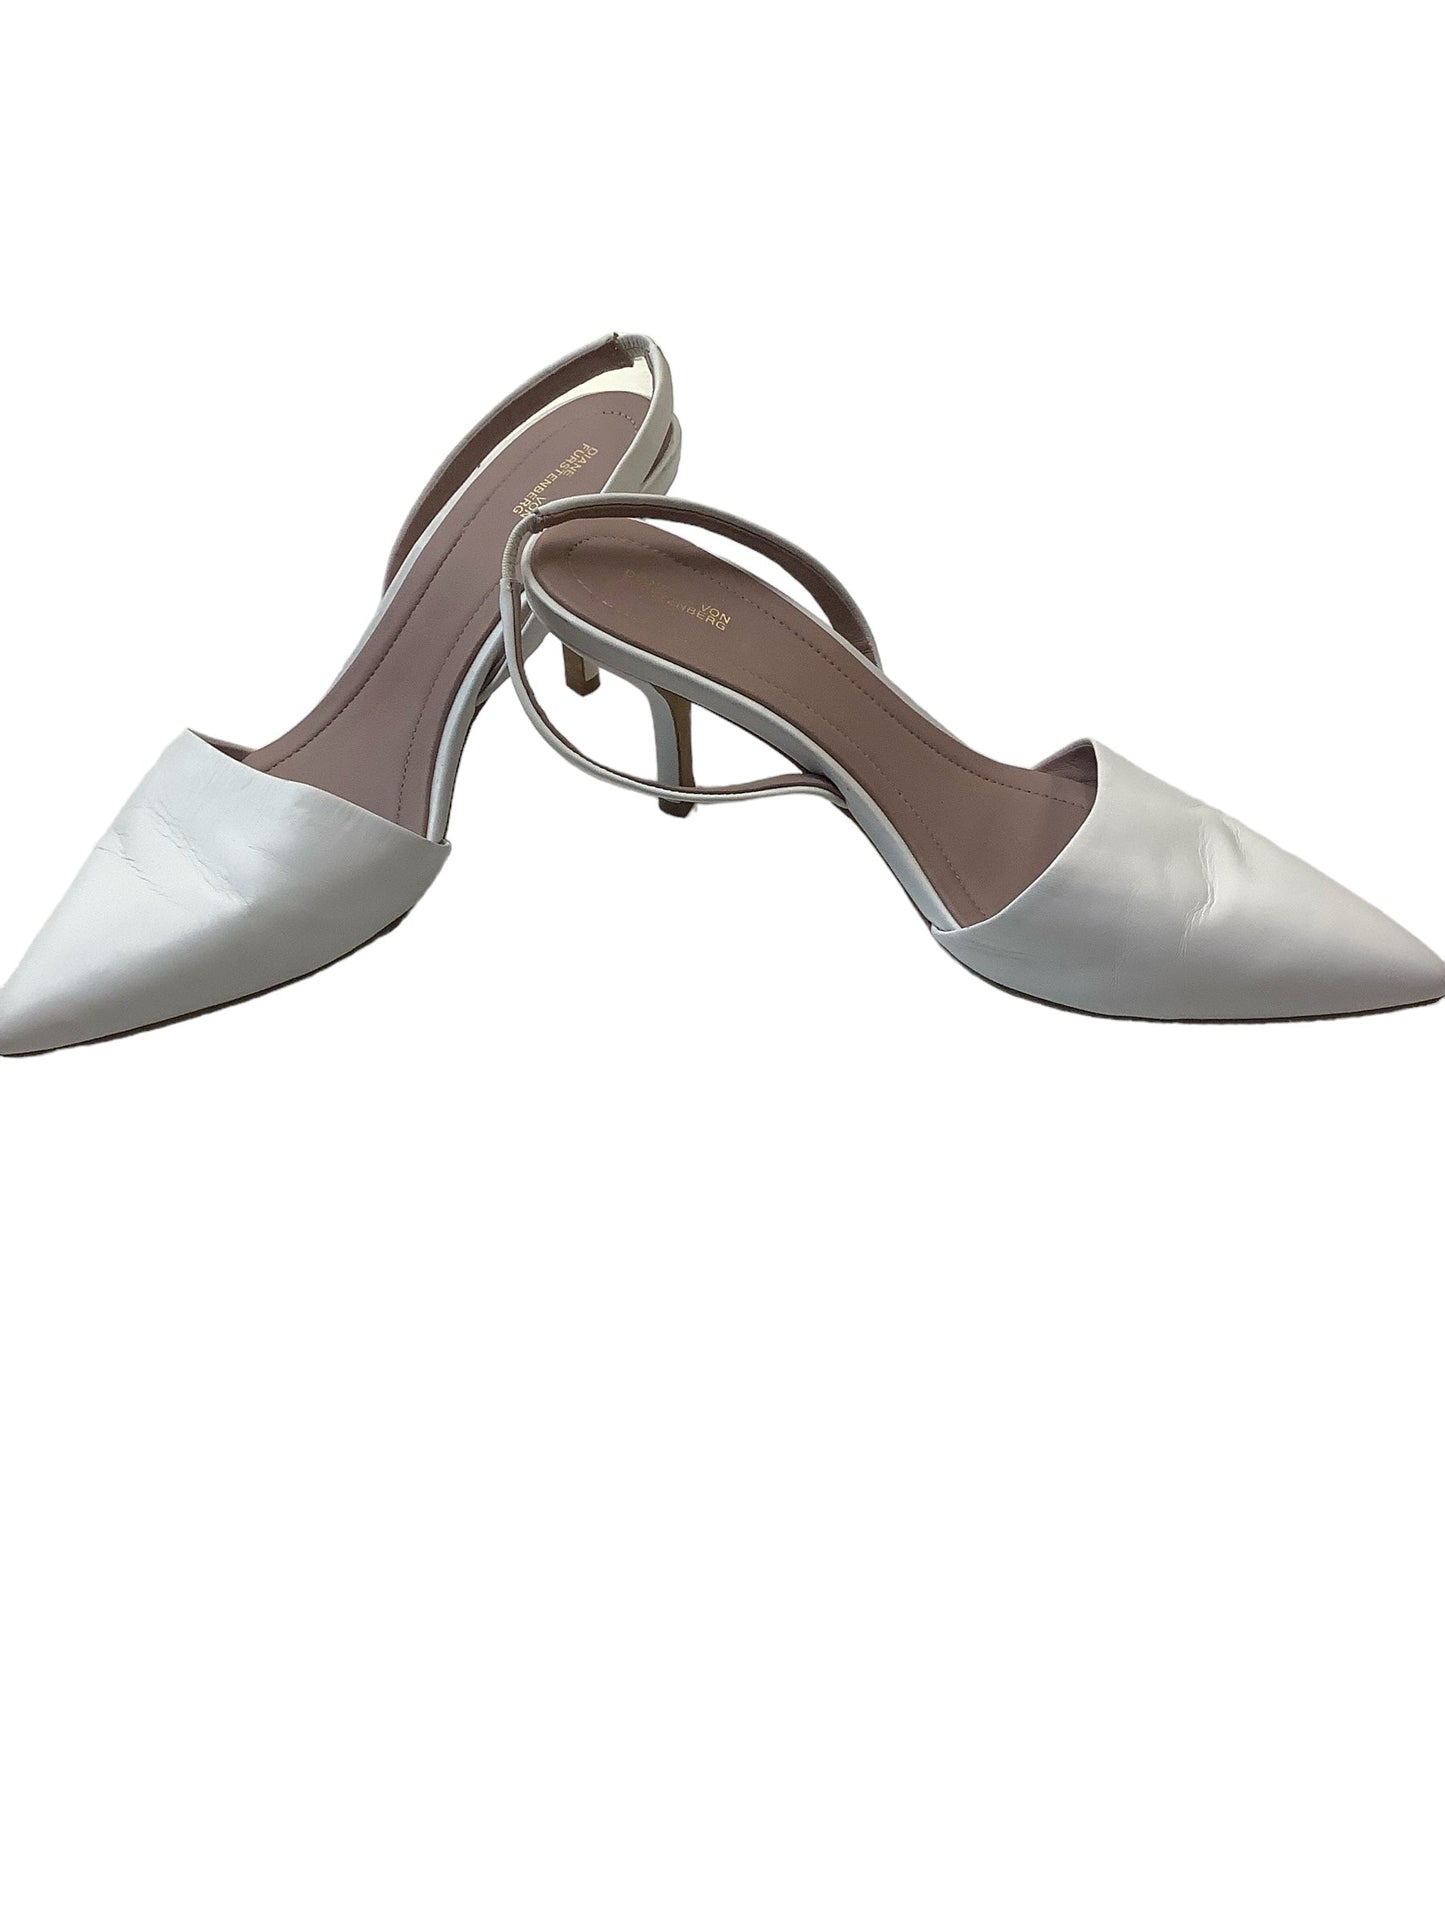 White Shoes Heels Kitten Diane Von Furstenberg, Size 7.5